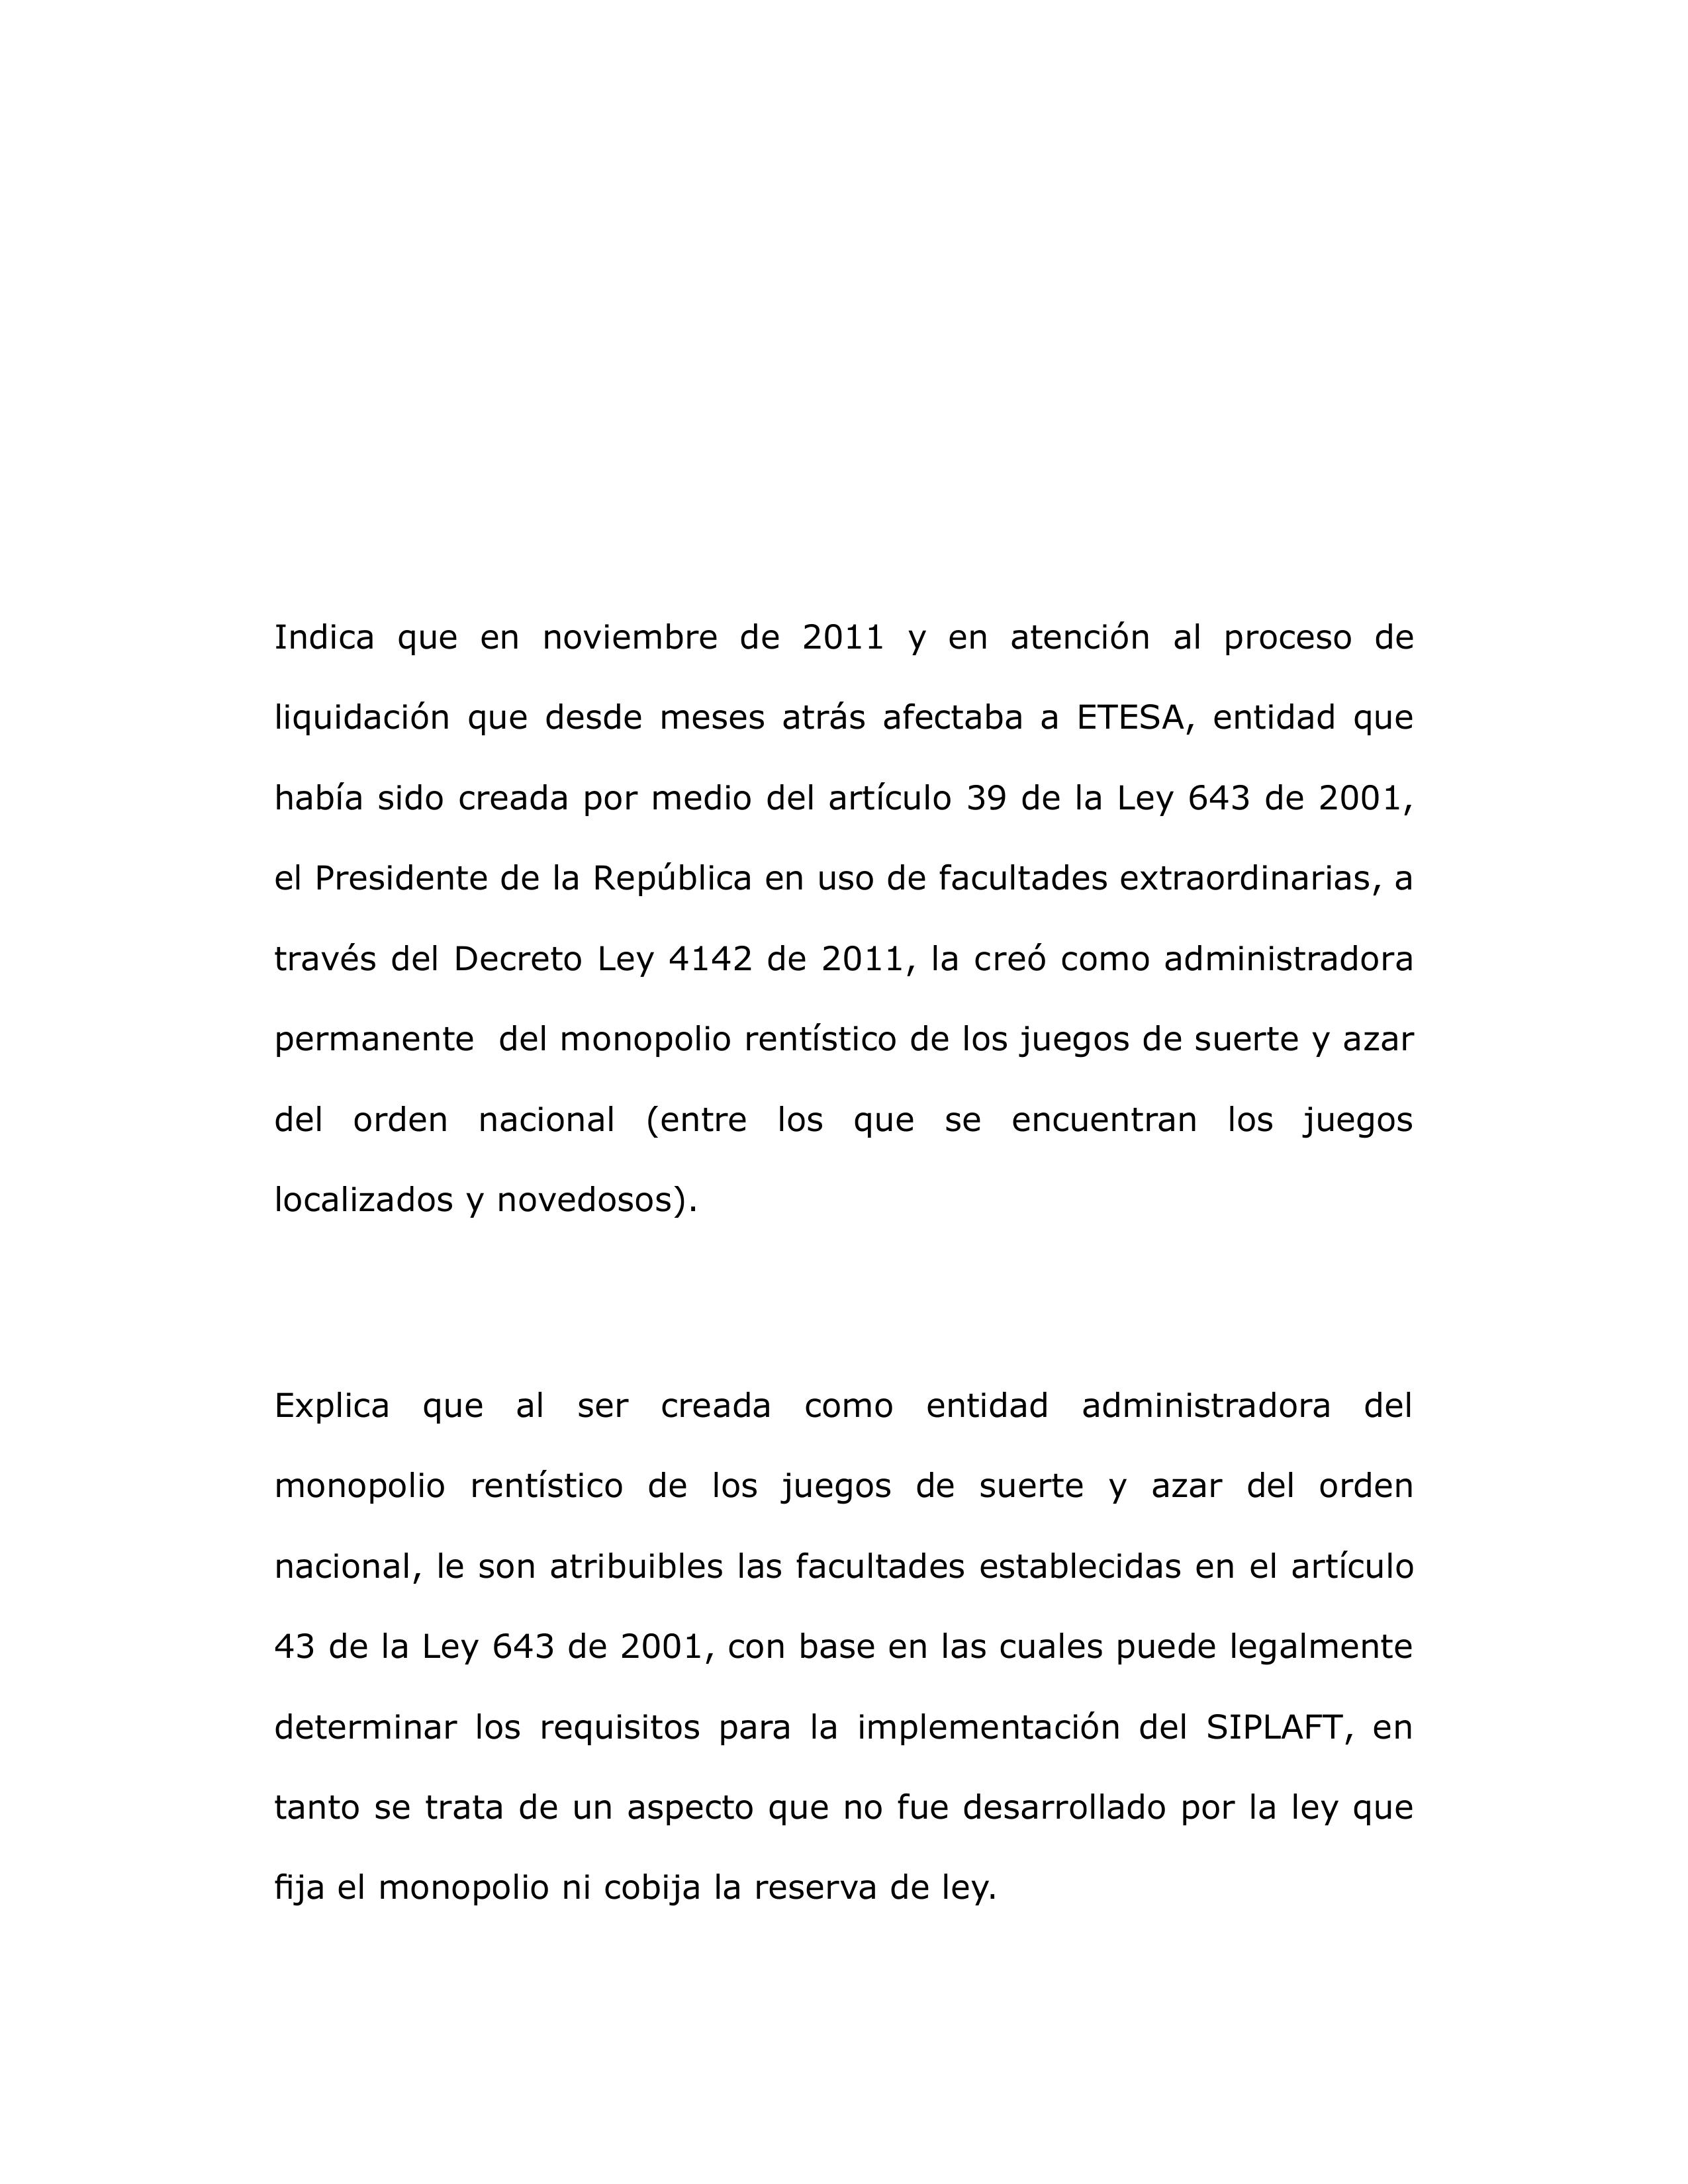 SIPLAFT de Coljuegos es legal, Consejo de Estado 